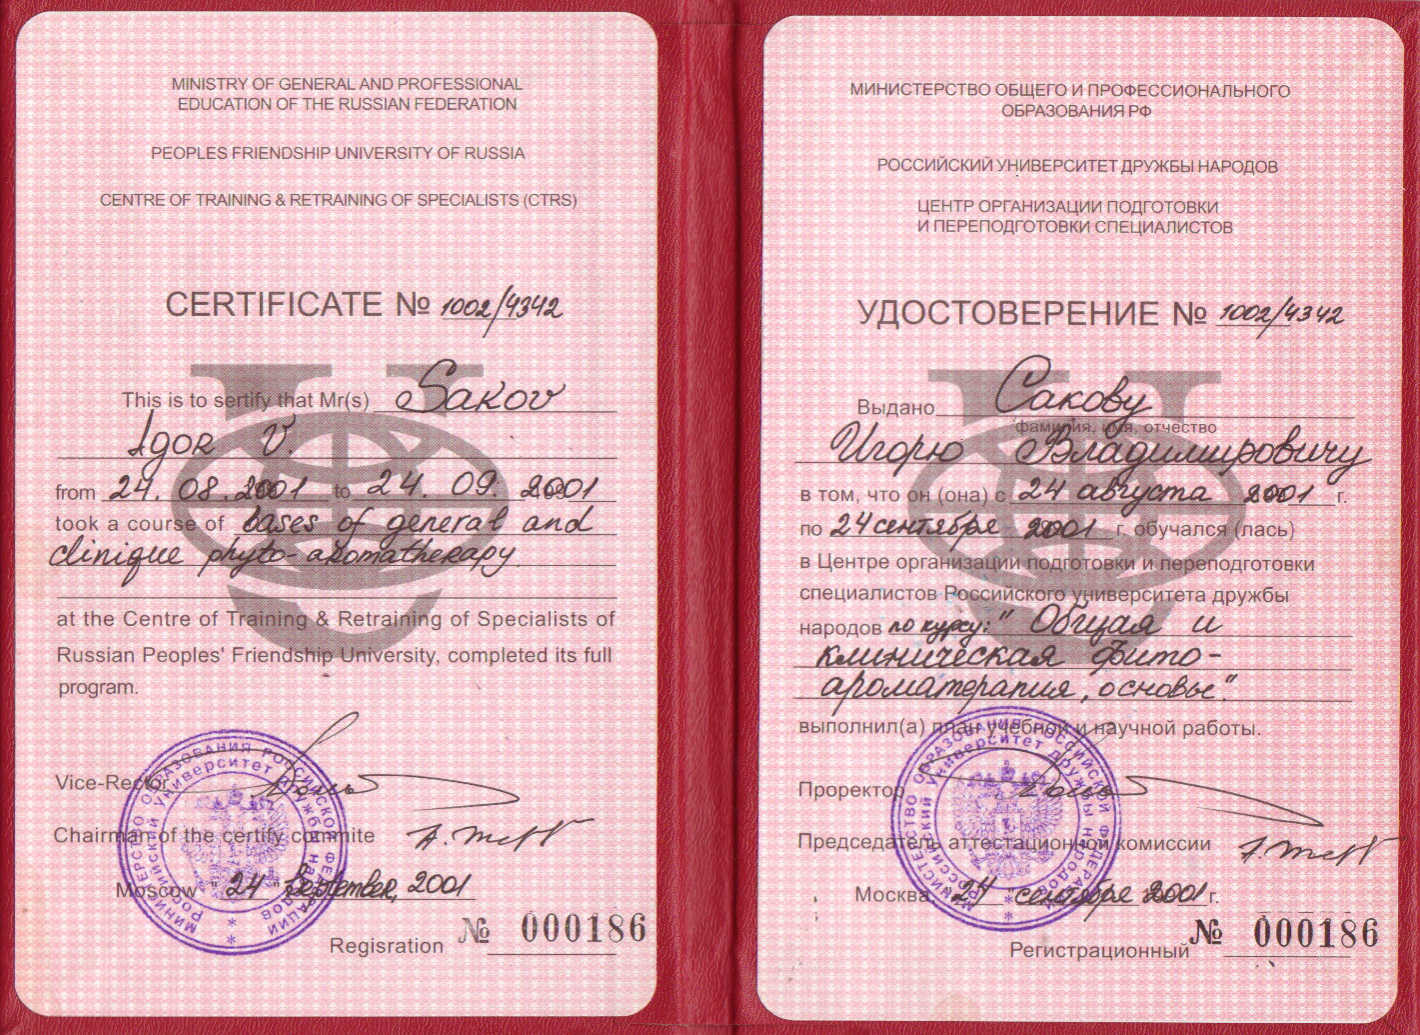 Сертификат по ароматерапии Сакова Игоря Владимировича